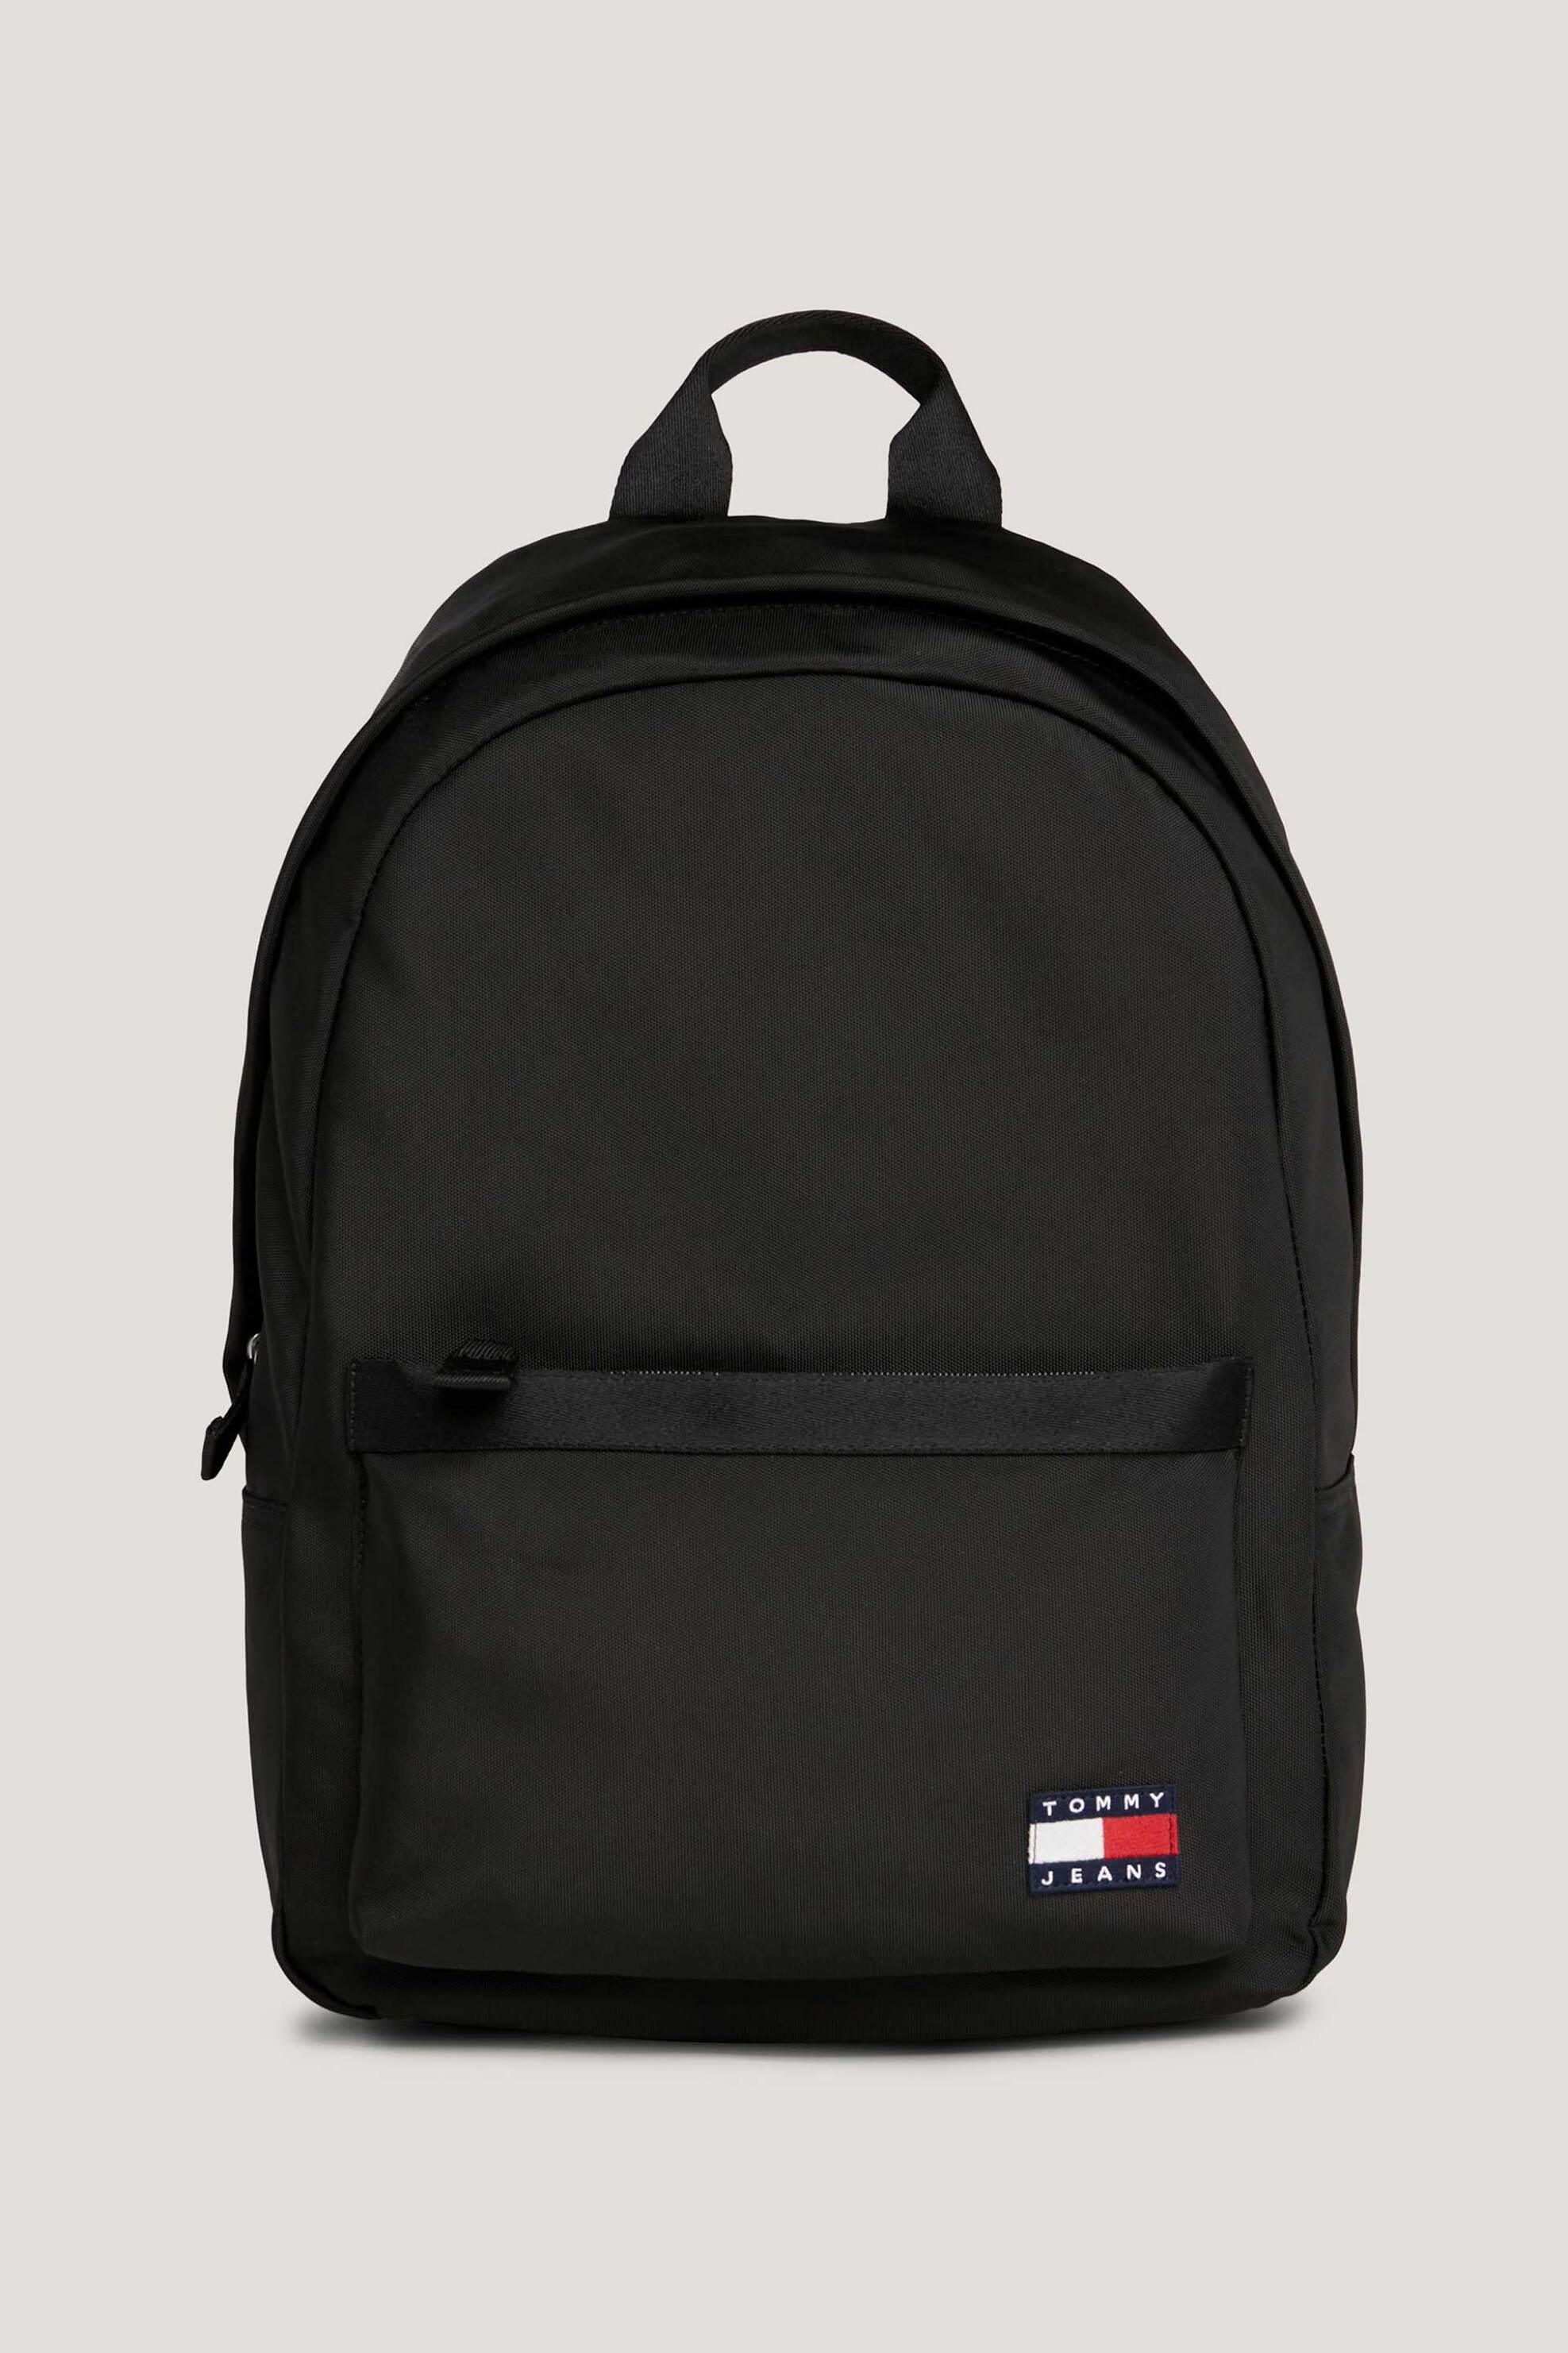 Ανδρική Μόδα > Ανδρικές Τσάντες > Ανδρικά Σακίδια & Backpacks Tommy Jeans ανδρικό backpack μονόχρωμο με λογότυπο - AM0AM11964 Μαύρο